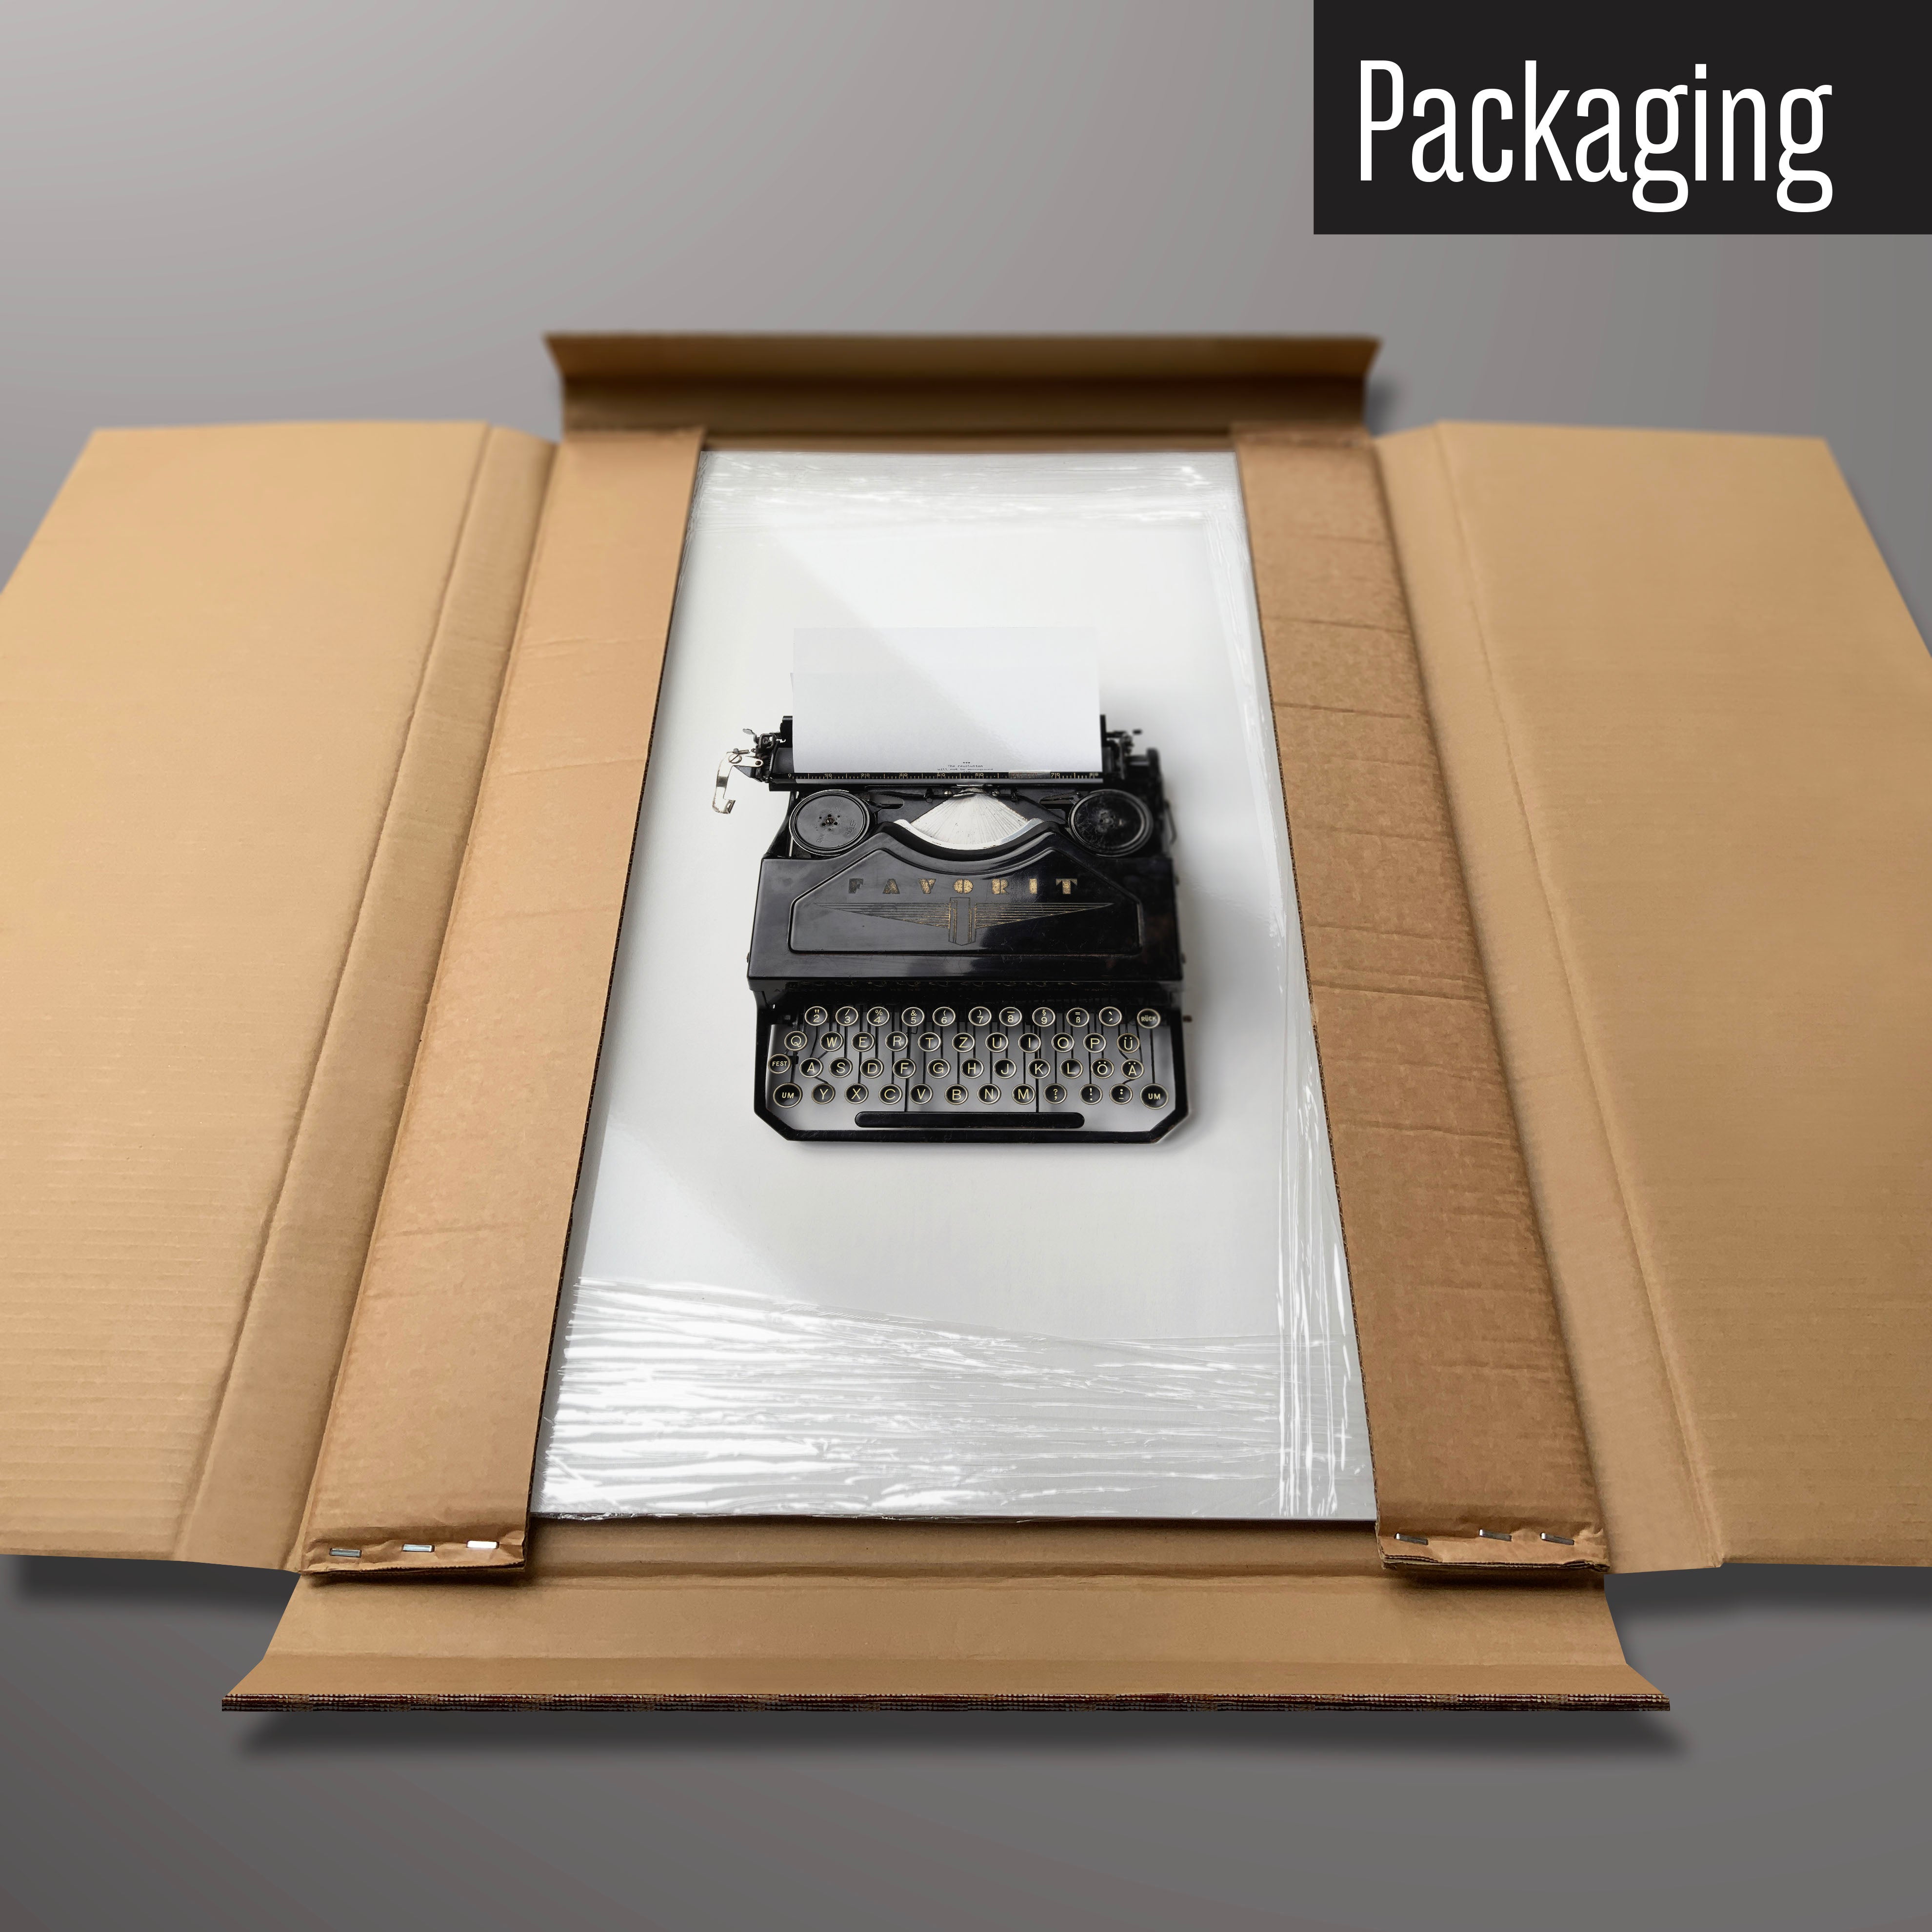 A vintage typewriter magnetic board in it’s cardboard packaging